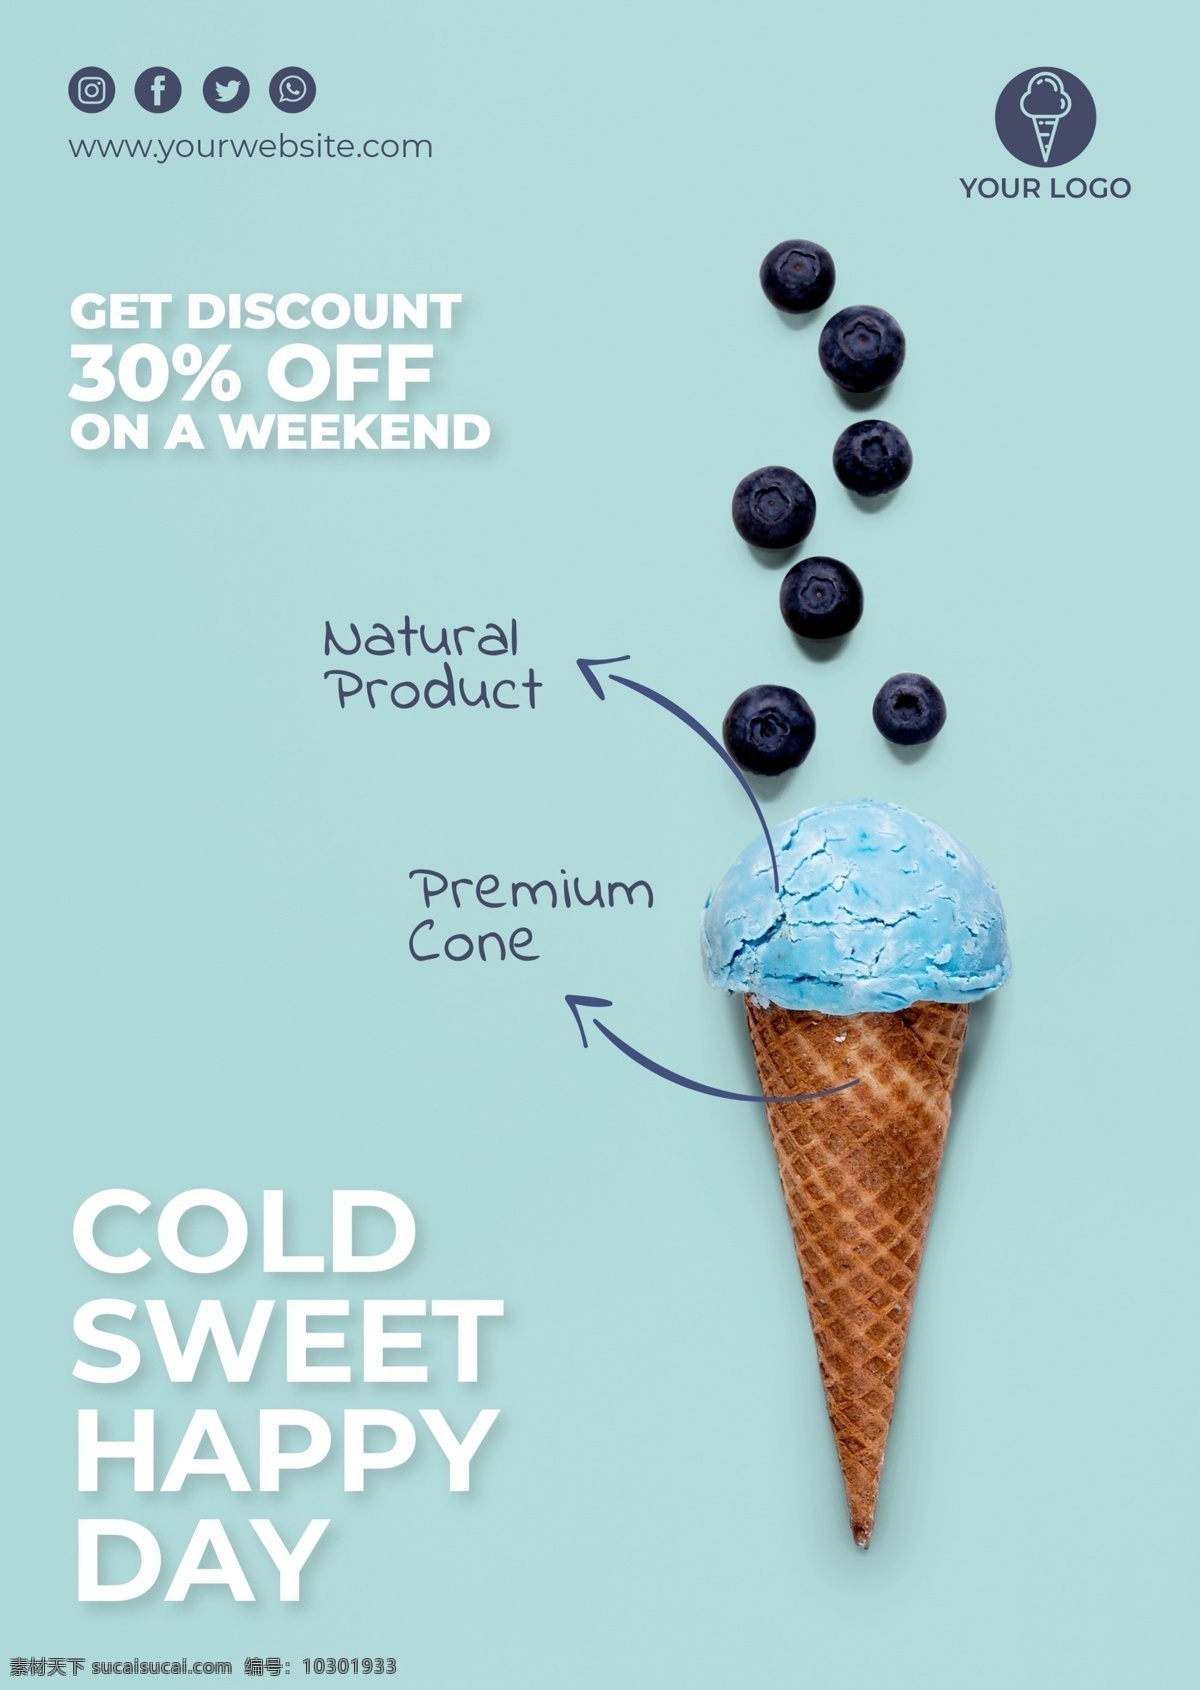 看 没 冰淇淋 蓝莓冰激凌 甜品海报设计 蓝莓冰淇淋 甜品海报 冰淇淋海报 蓝莓 招贴设计